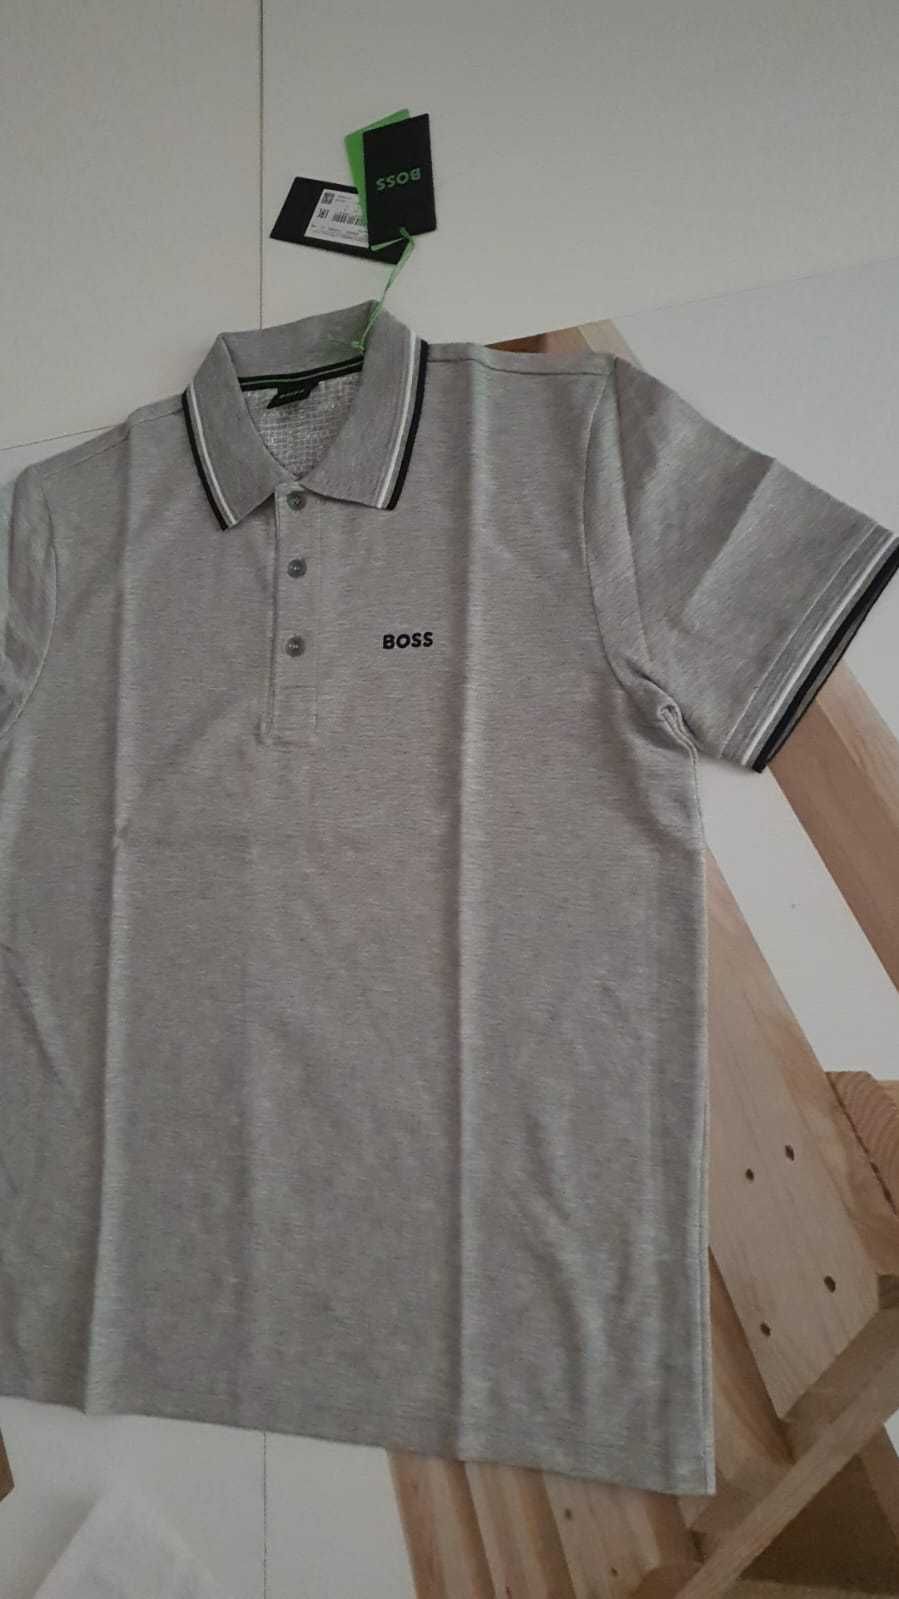 Vand tricou barbati Hugo Boss masura M,L si XL original cu eticheta